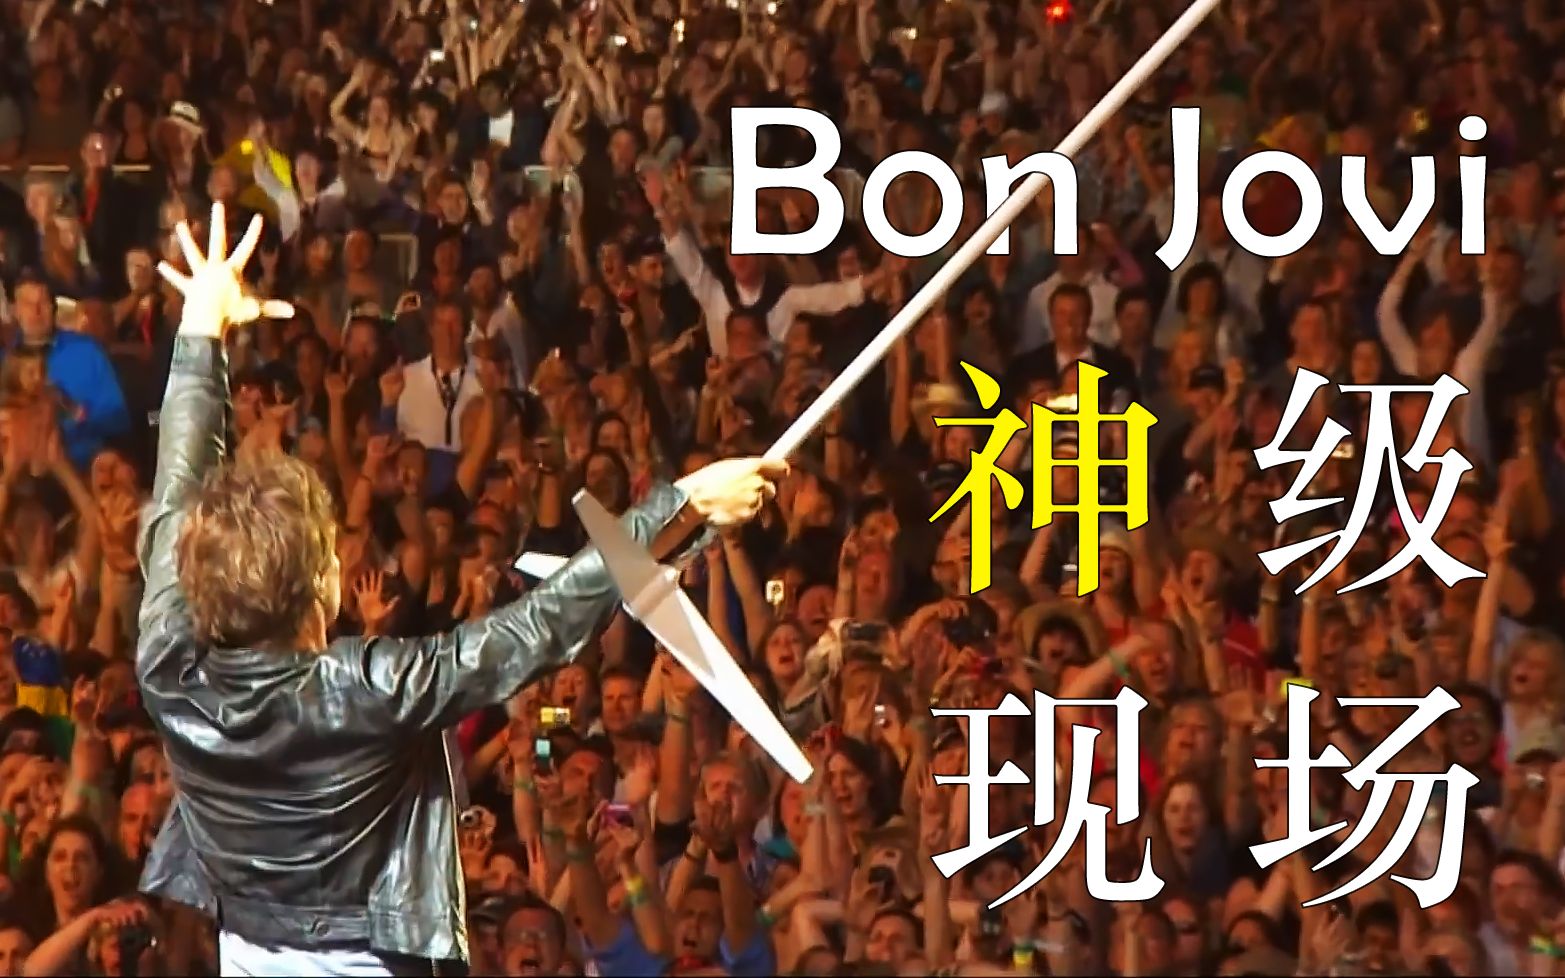 你活着就是为了这场战斗！气势磅礴的万人大合唱！Bon Jovi 最屌的一版 Livin' On A Prayer，这就是摇滚！